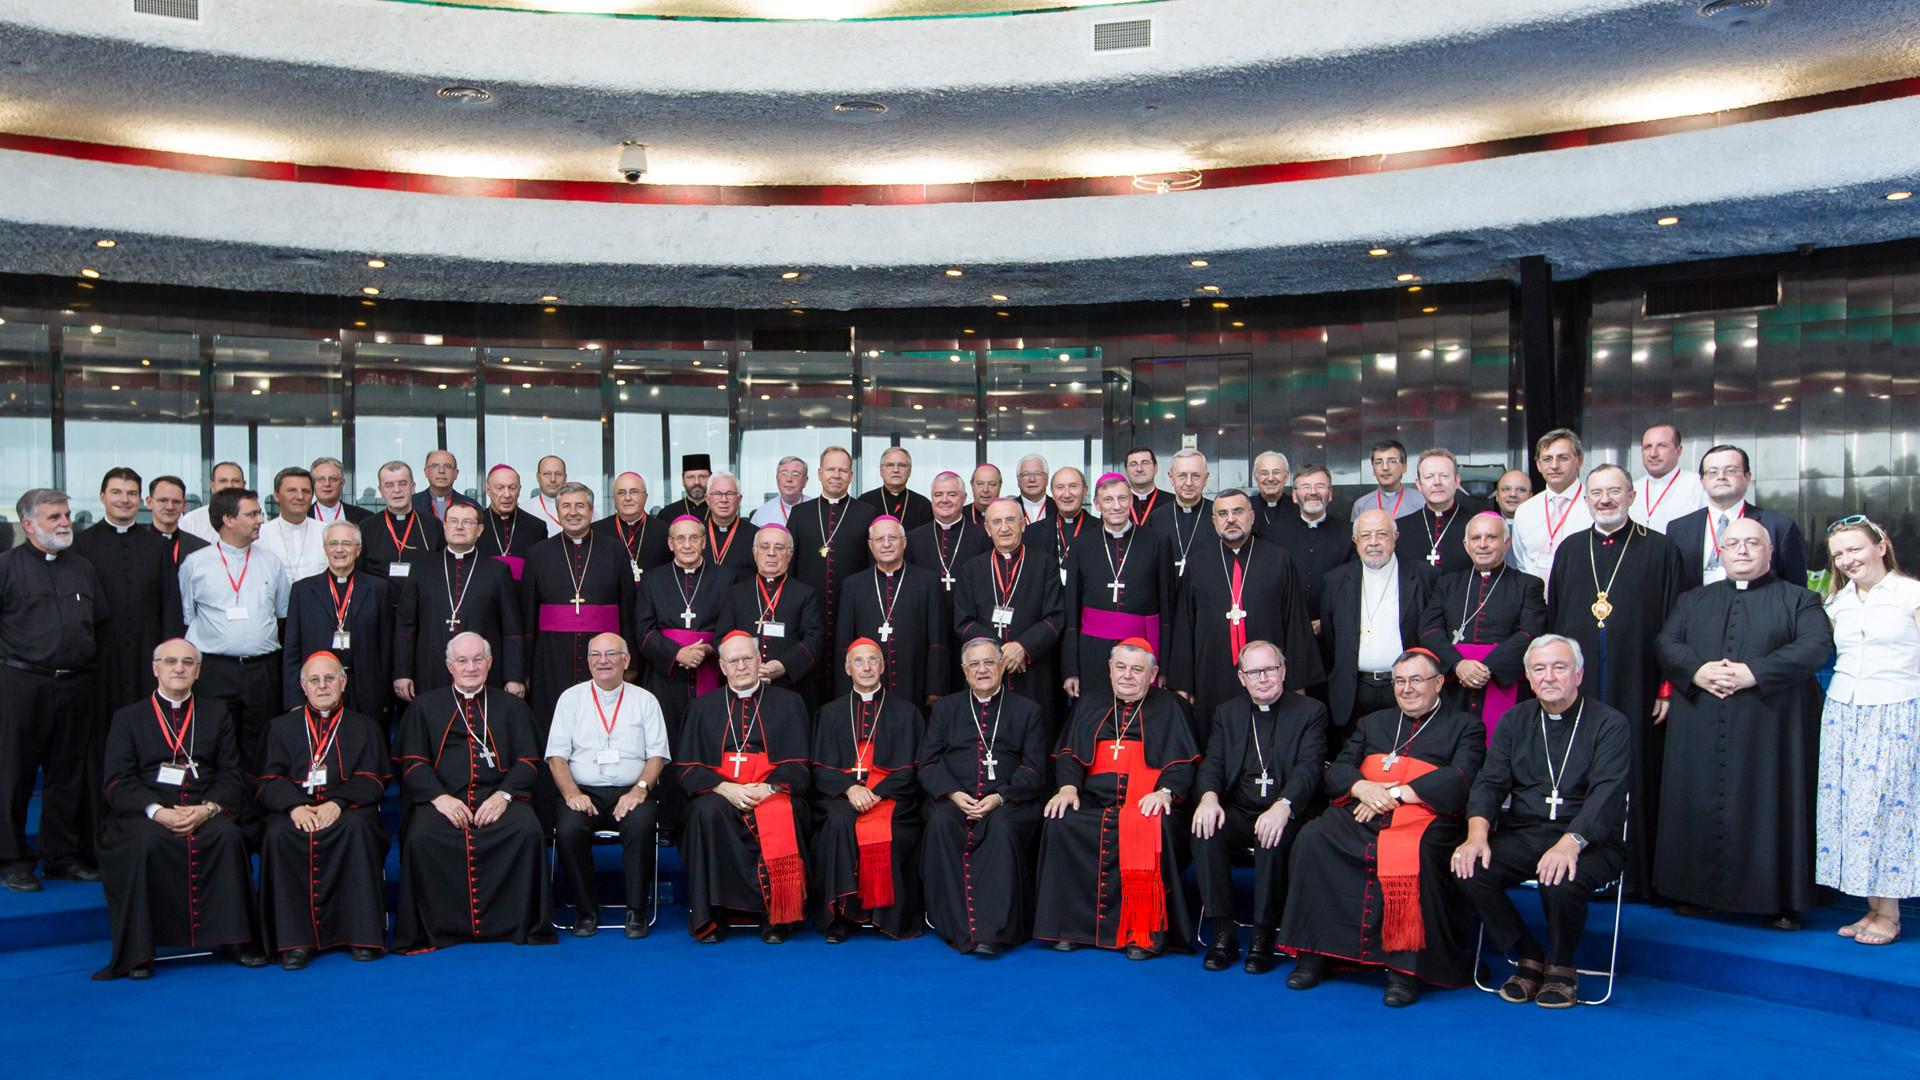 Les évêques du Conseil des conférences épiscopales d'Europe reçus à Nazareth (photo Andrea Krogmann)